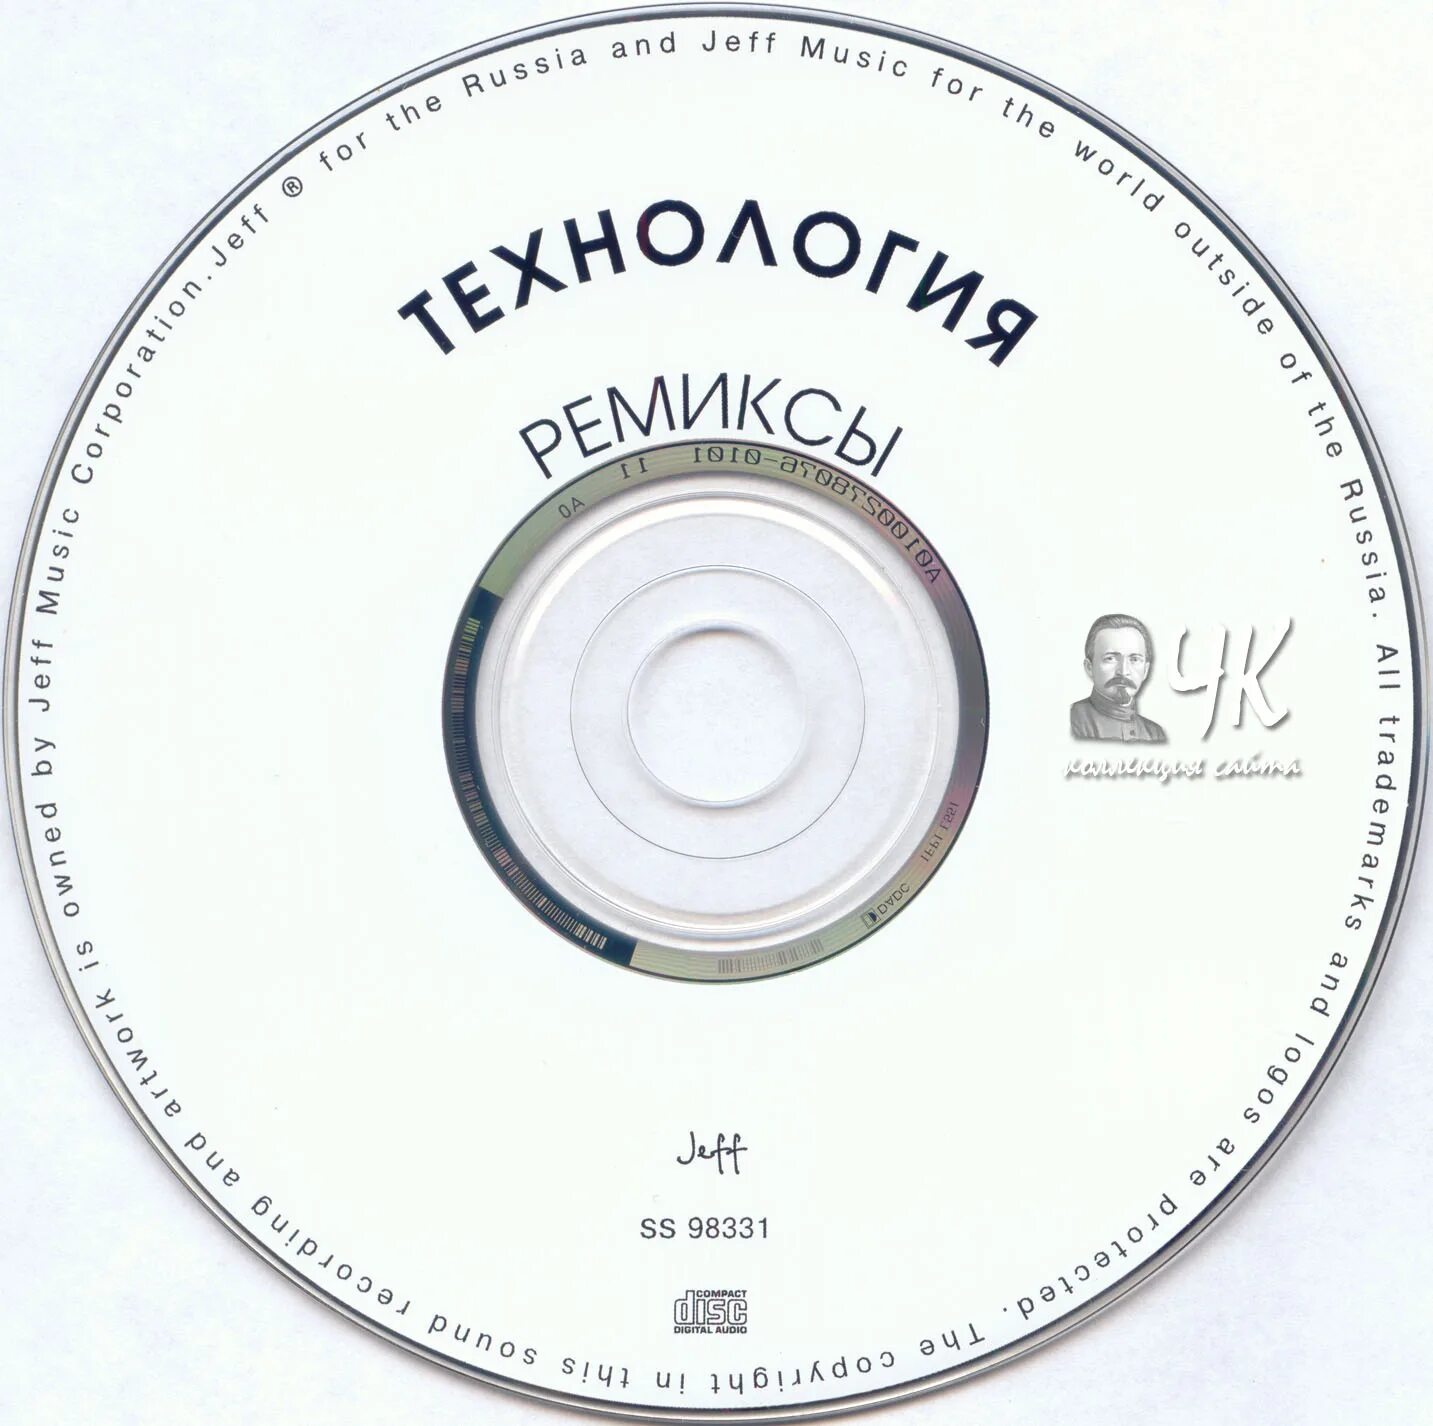 1998 - Технология - ремиксы. Технология коллекция 1994-2006. Nas CD ремикс. Игла Remix CD 2019. Эстрада ремикс